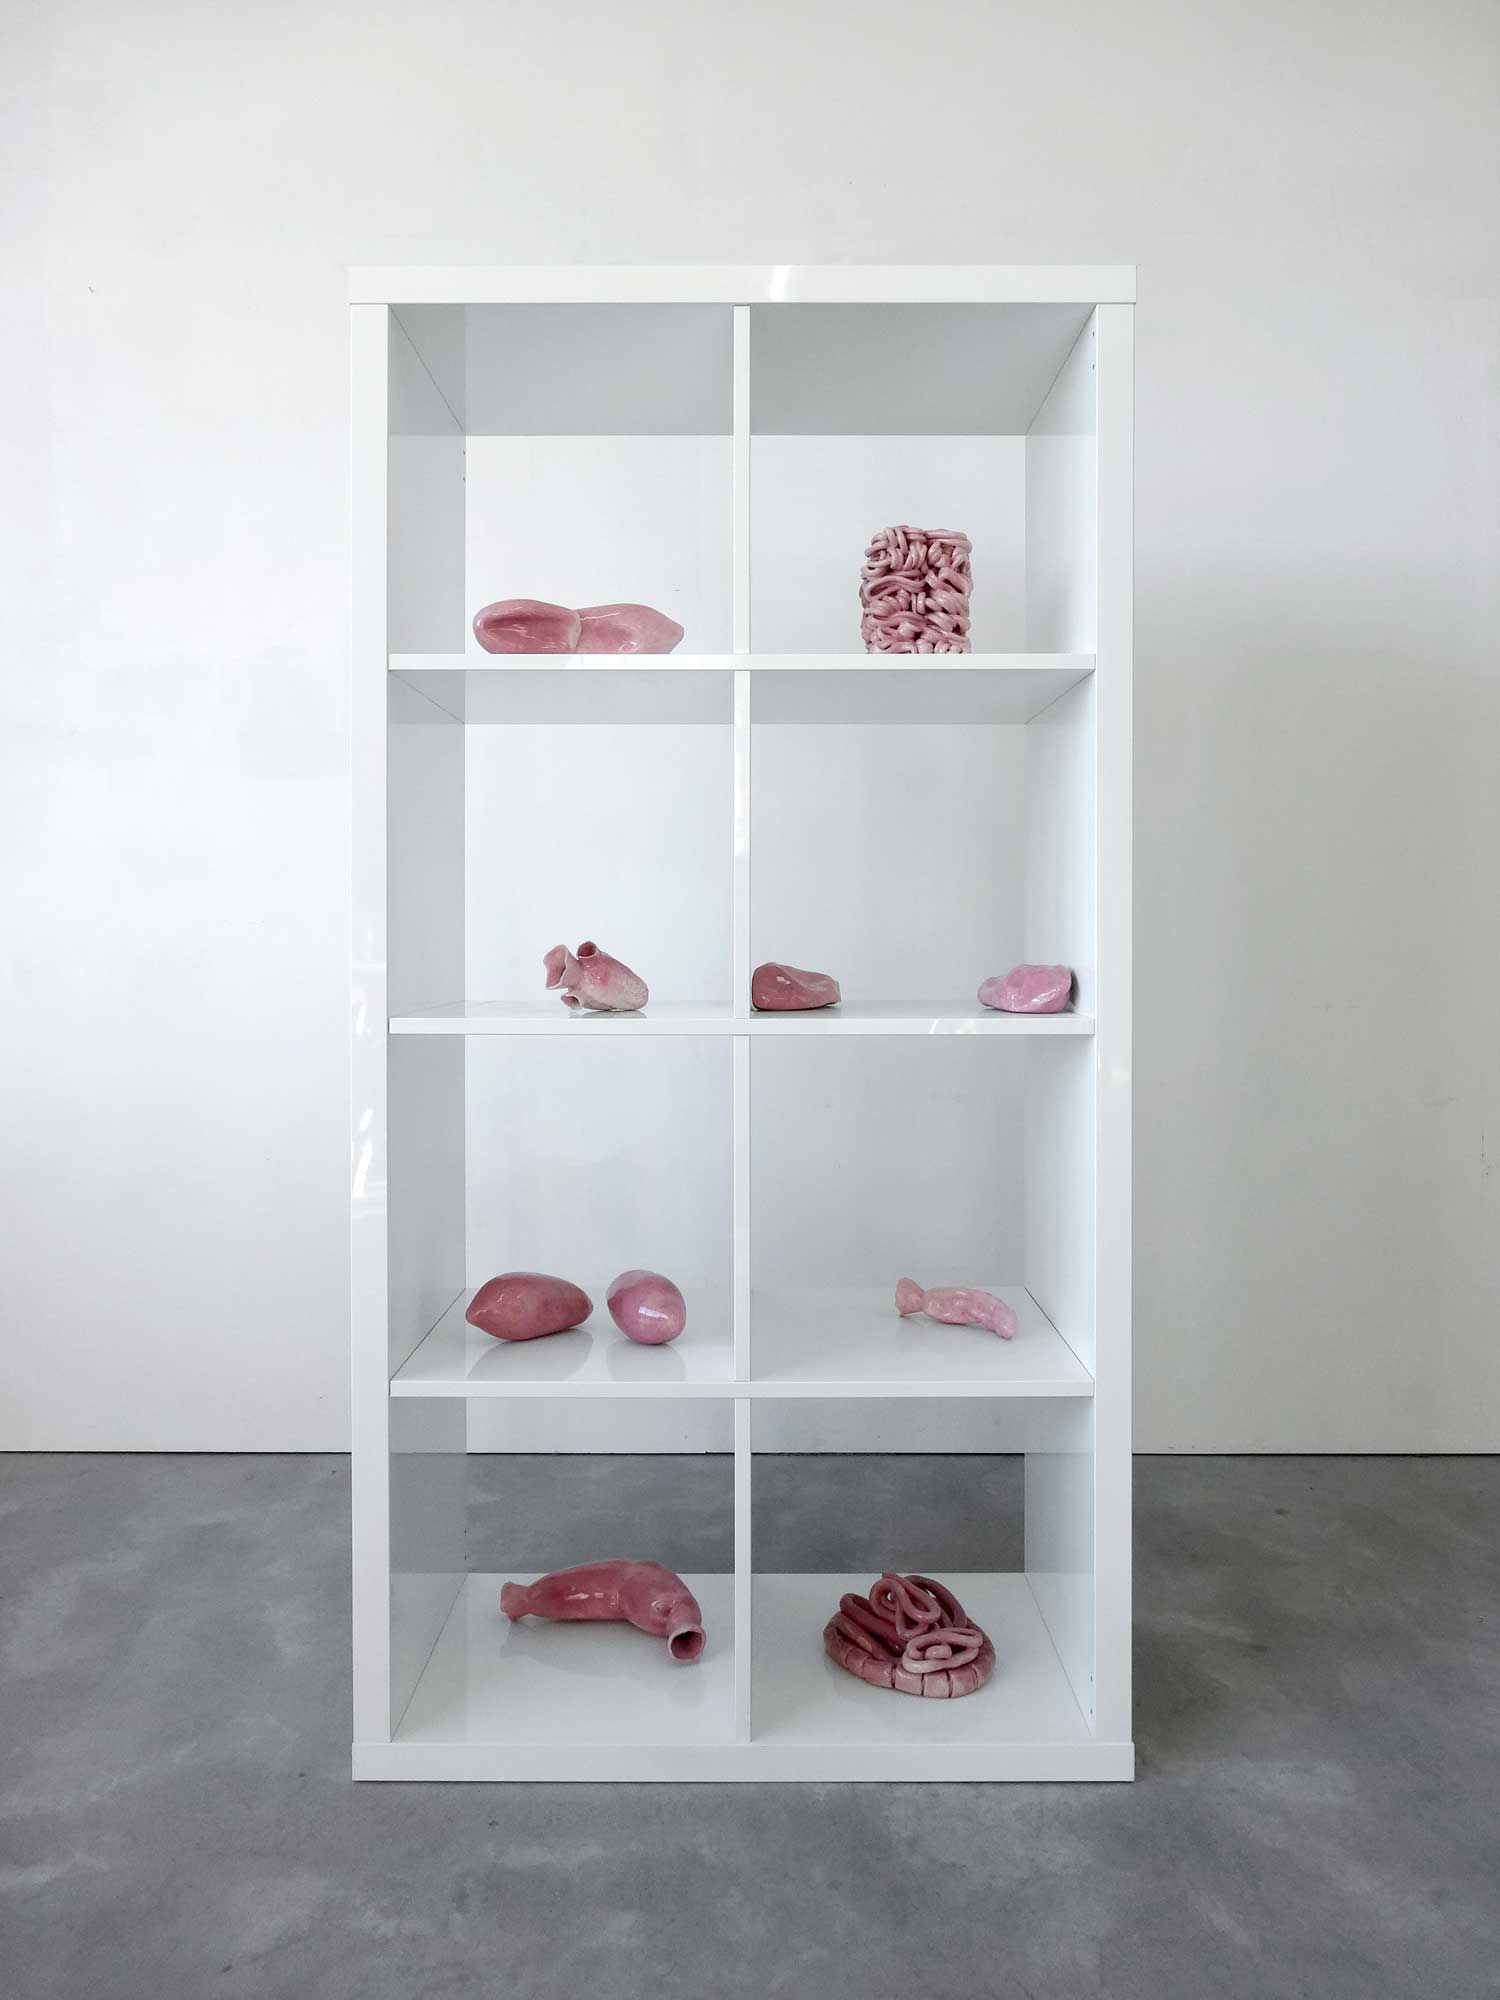 La vie domestique - Grès émaillé, meuble - 77 cm x 39 cm x 147 cm - 2015 